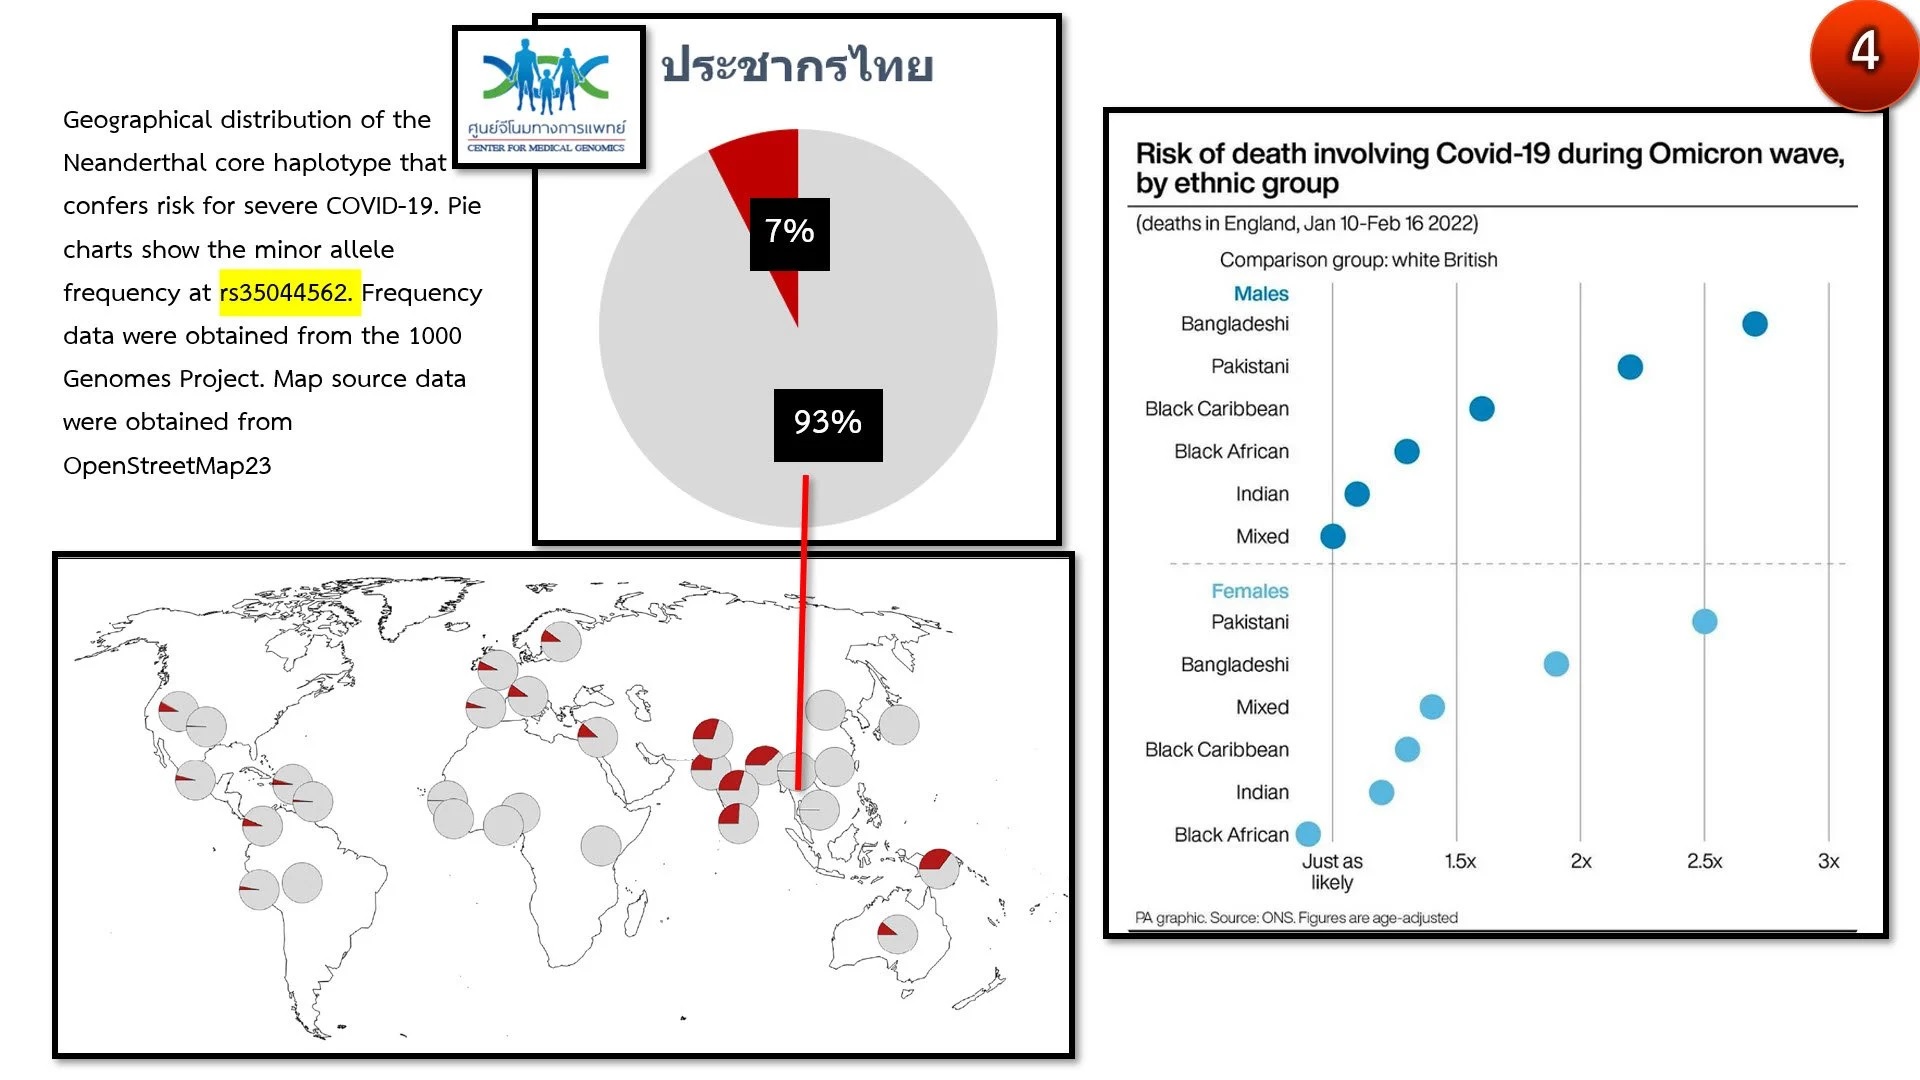 ศูนย์จีโนมฯ ชี้คนไทยมียีน 'มนุษย์นีแอนเดอร์ทัล' เพียง 7% ทำให้อัตราเสียชีวิตโควิด-19 ไม่รุนแรง